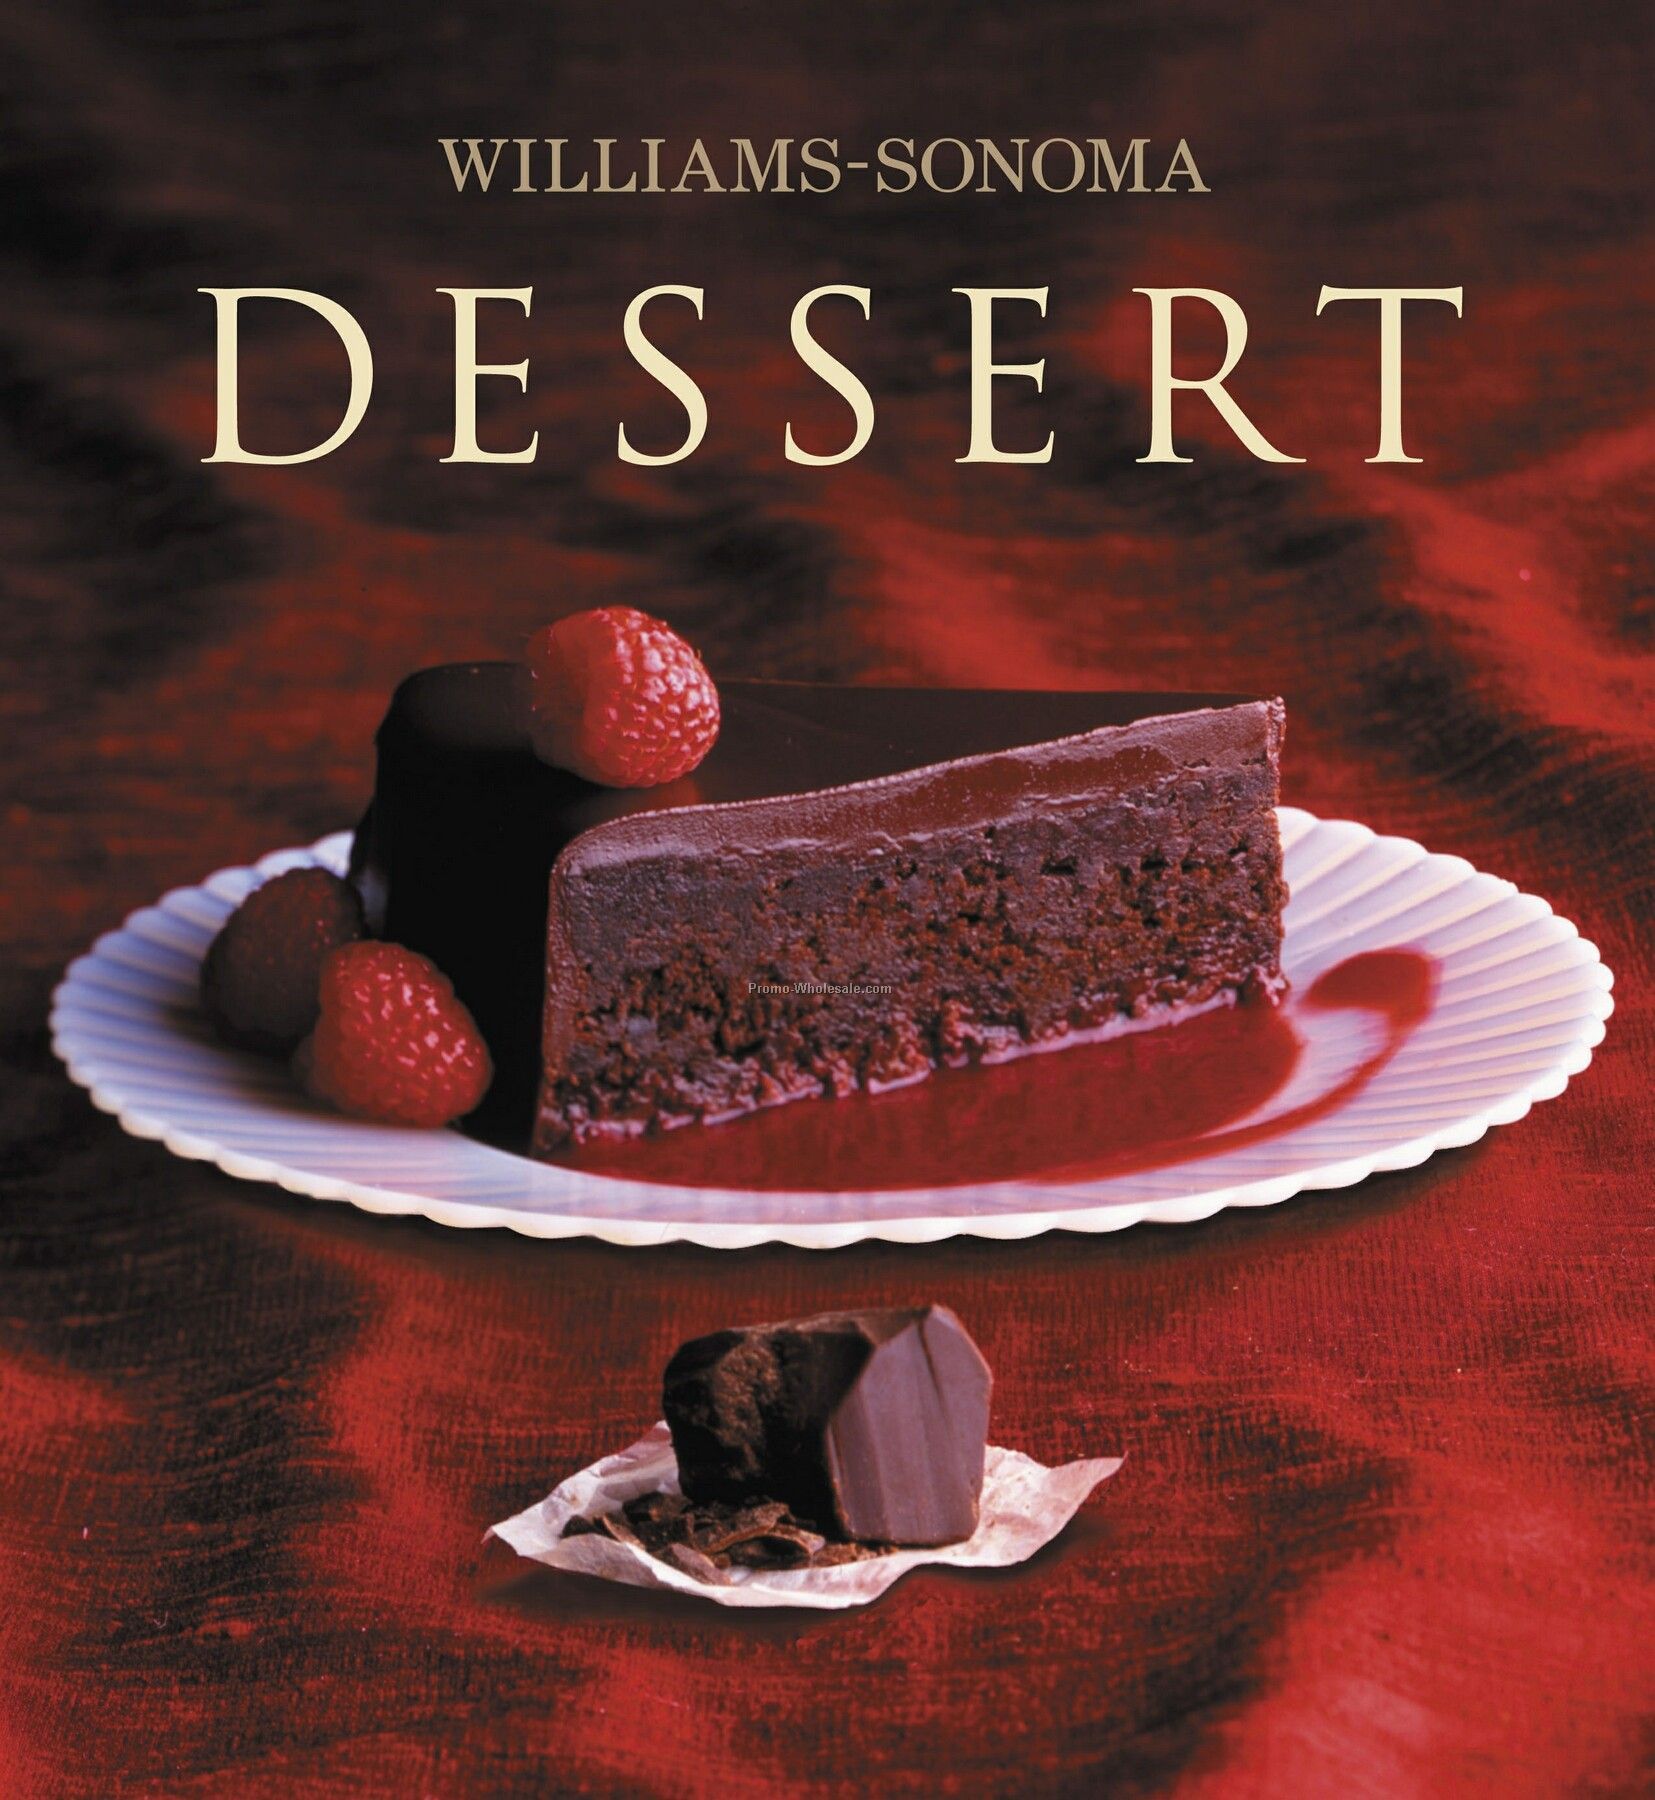 Williams-sonoma Dessert Cookbook